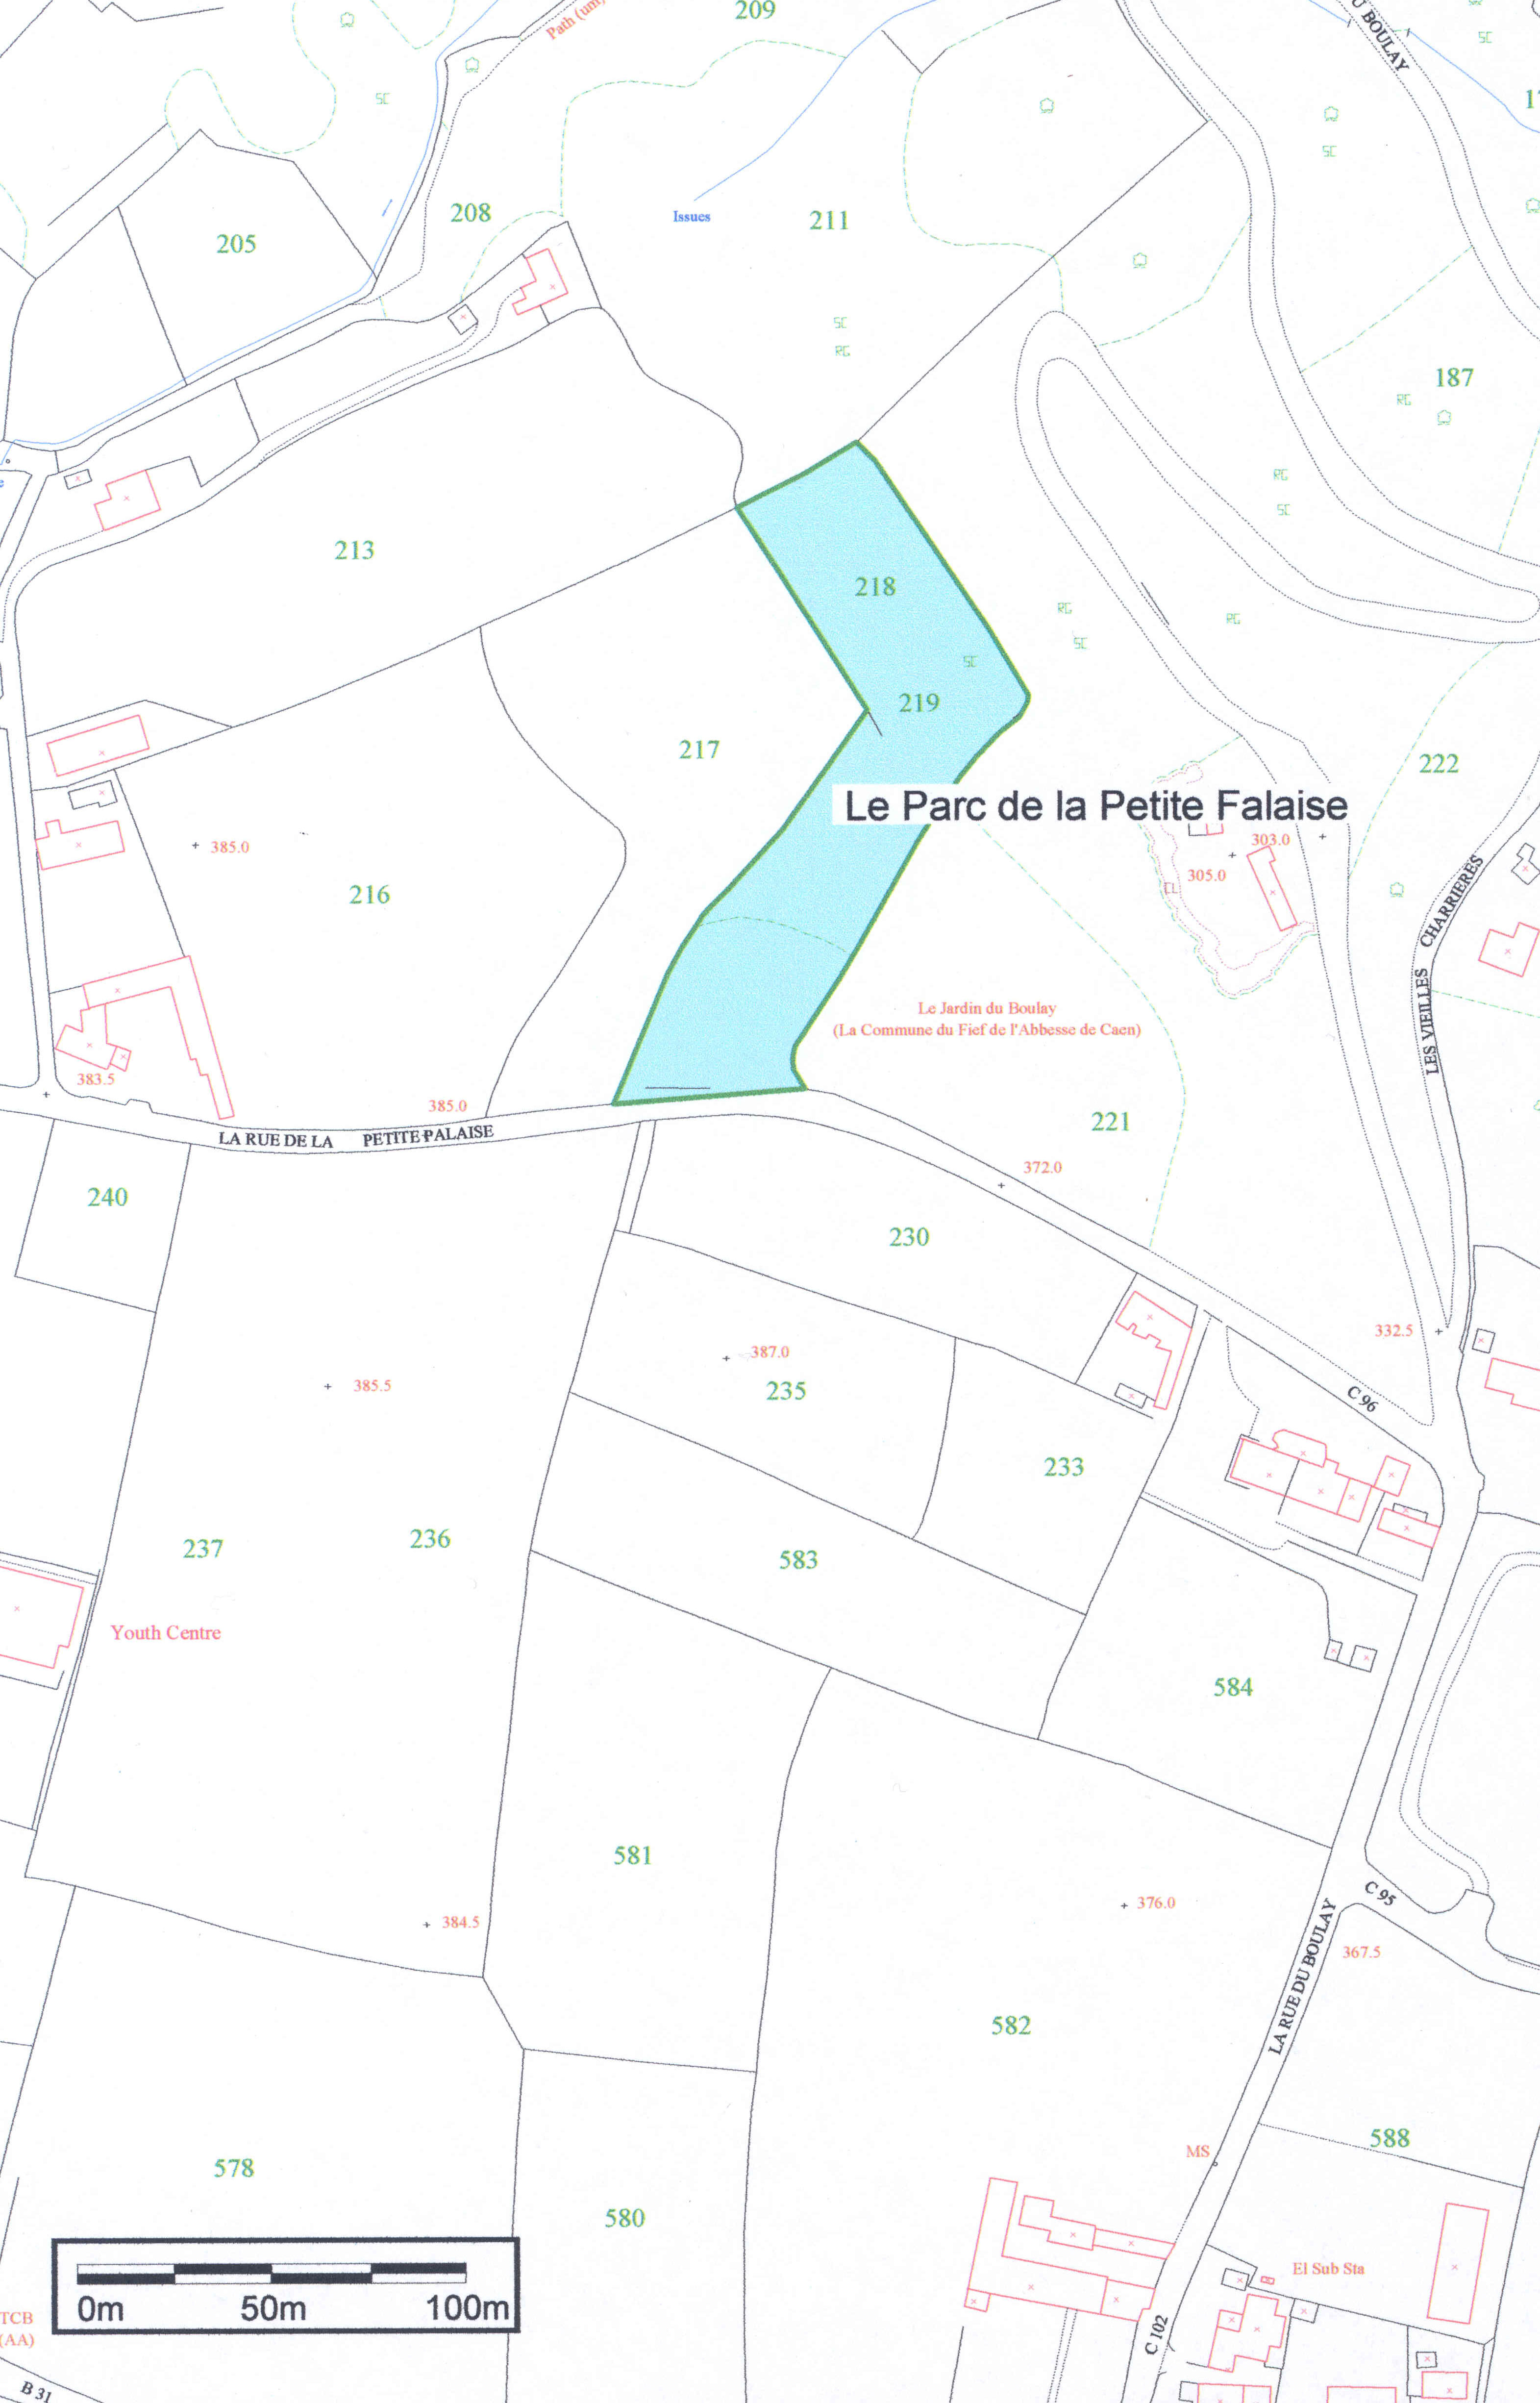 Part 3 - map of Le Parc de la Petite Falaise